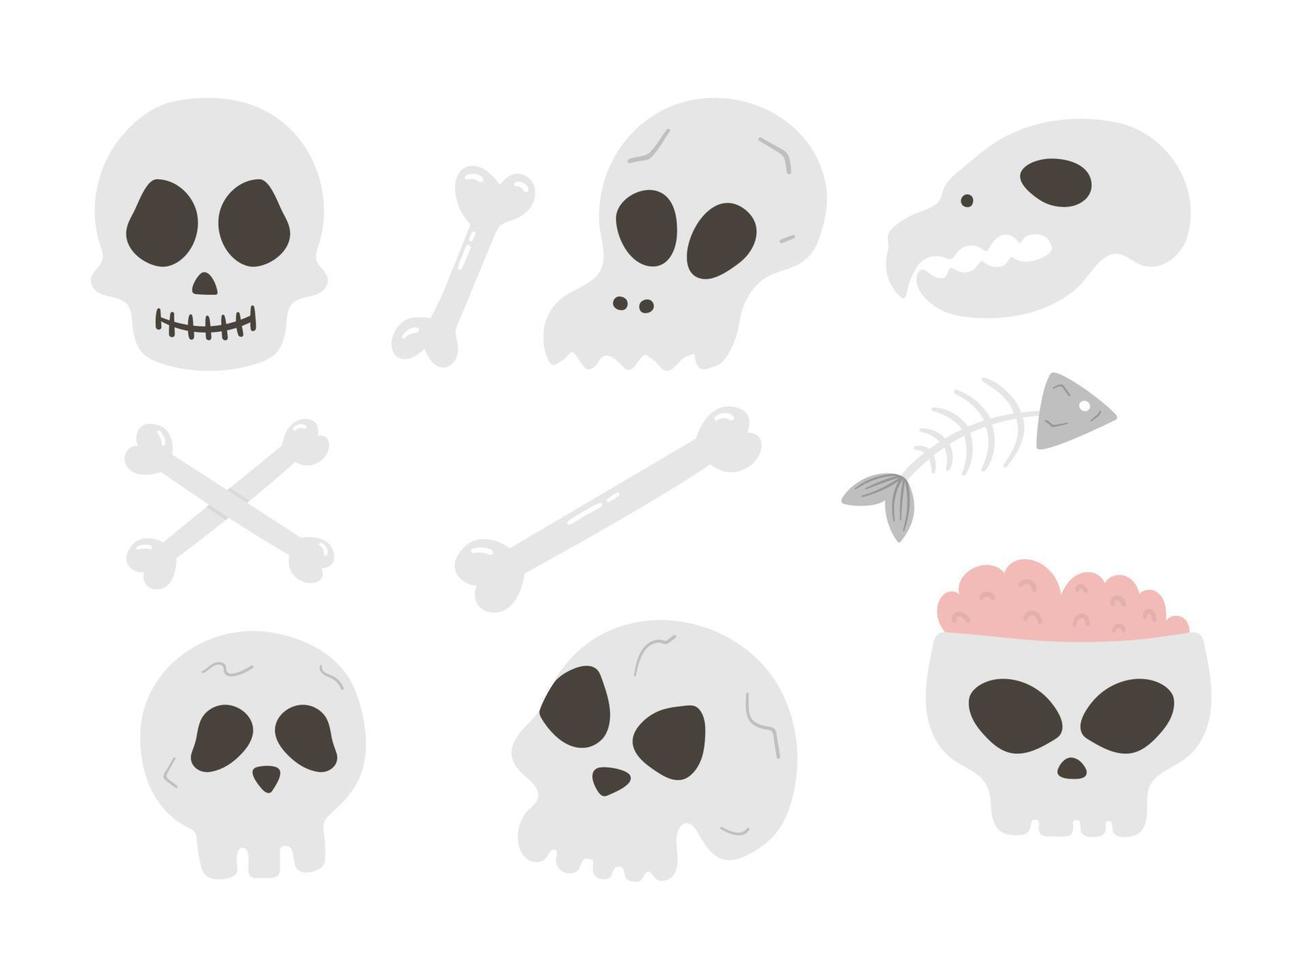 conjunto de cráneos y huesos de vector. Ilustración de fiesta de Halloween con esqueletos humanos y animales. diseño de miedo para la fiesta de otoño de samhain. colección de elementos del día de todos los santos. vector